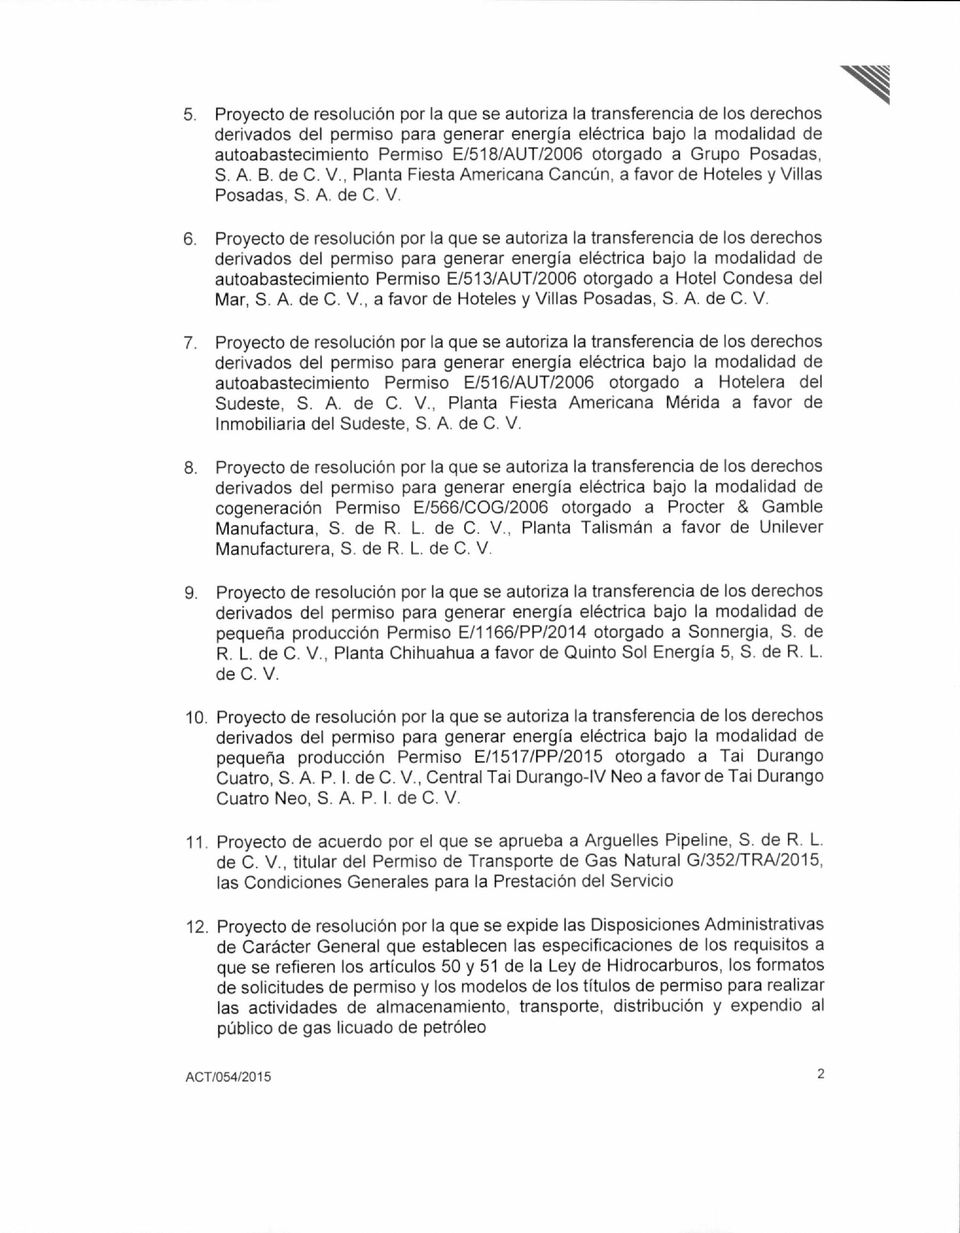 Proyecto de resolución por la que se autoriza la transferencia de los derechos autoabastecimiento Permiso E/513/AUT/2006 otorgado a Hotel Condesa del Mar, S. A. de C. V.